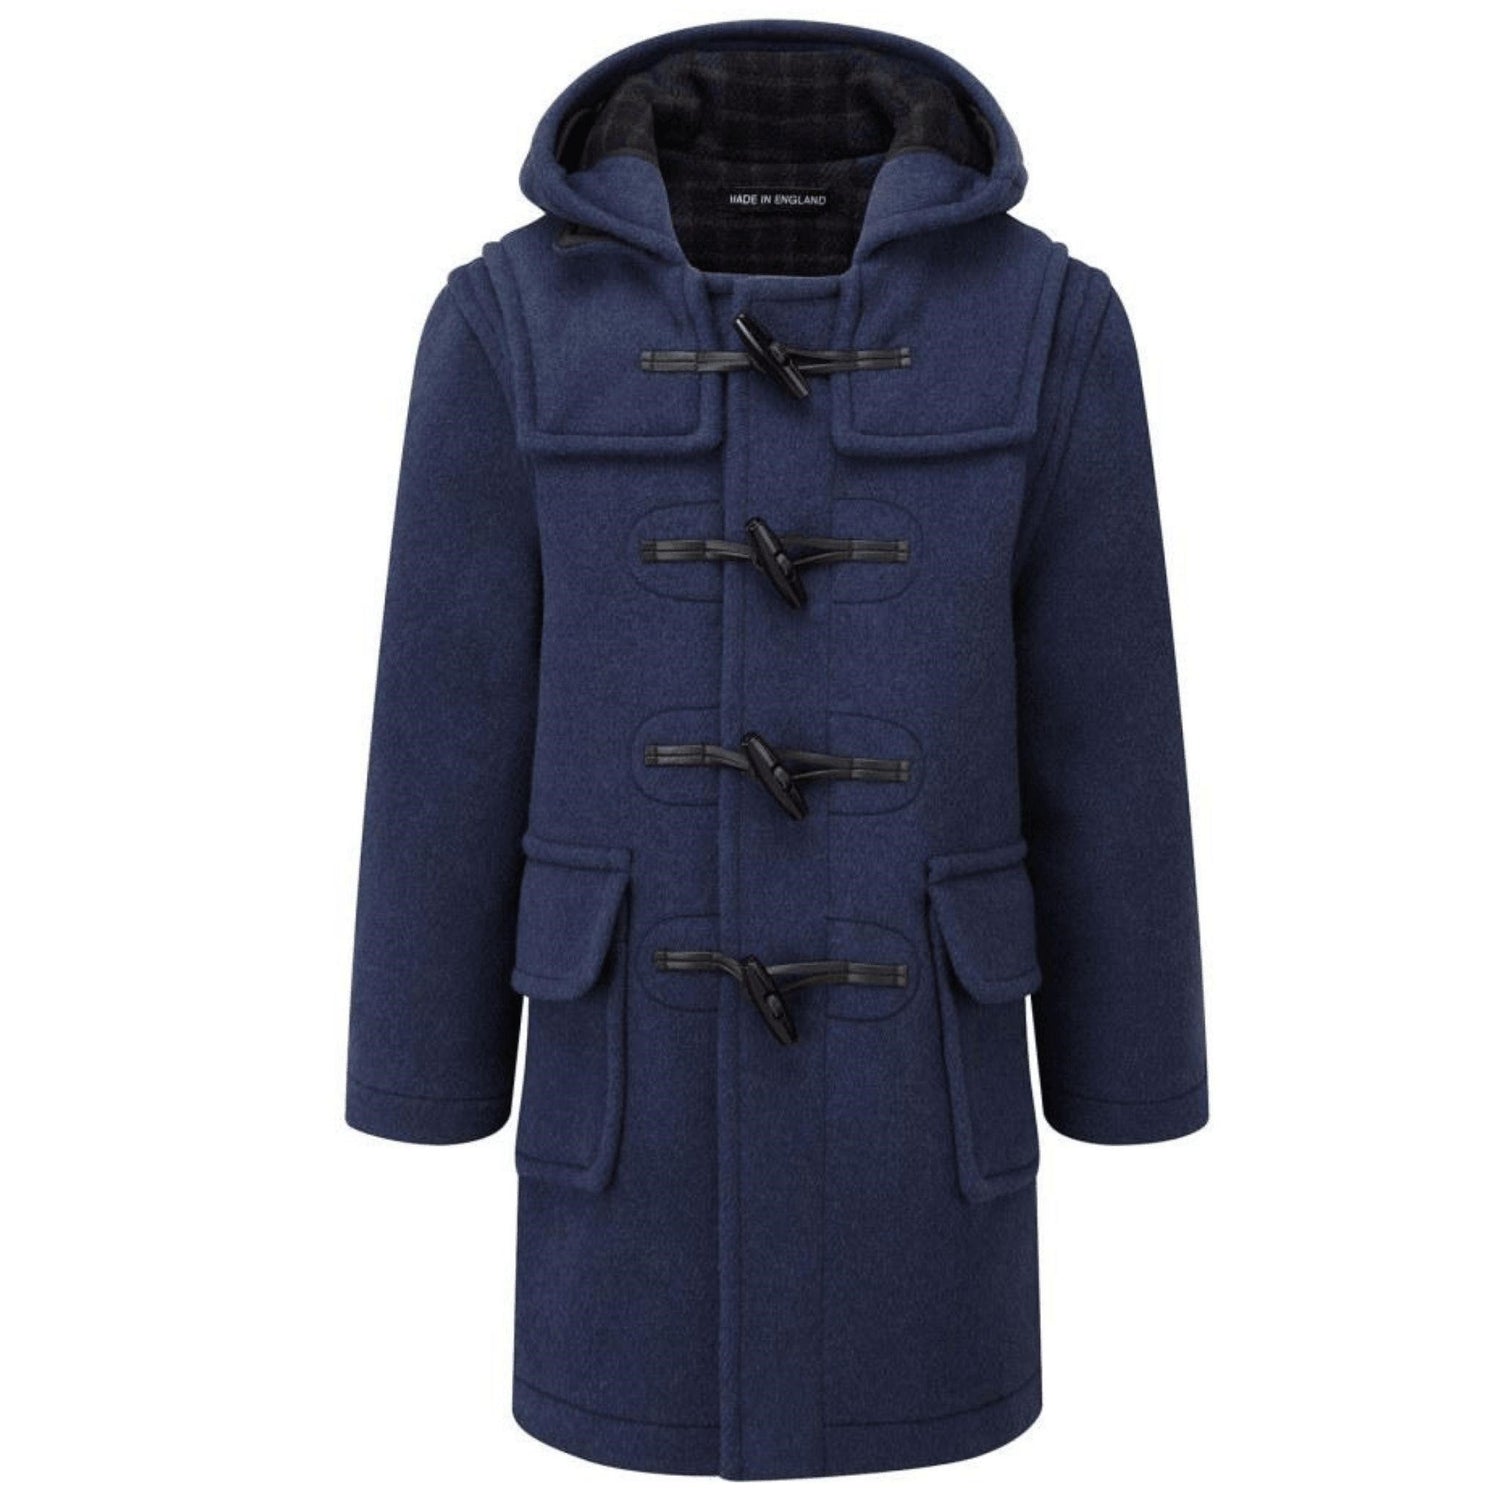 Duffle coat